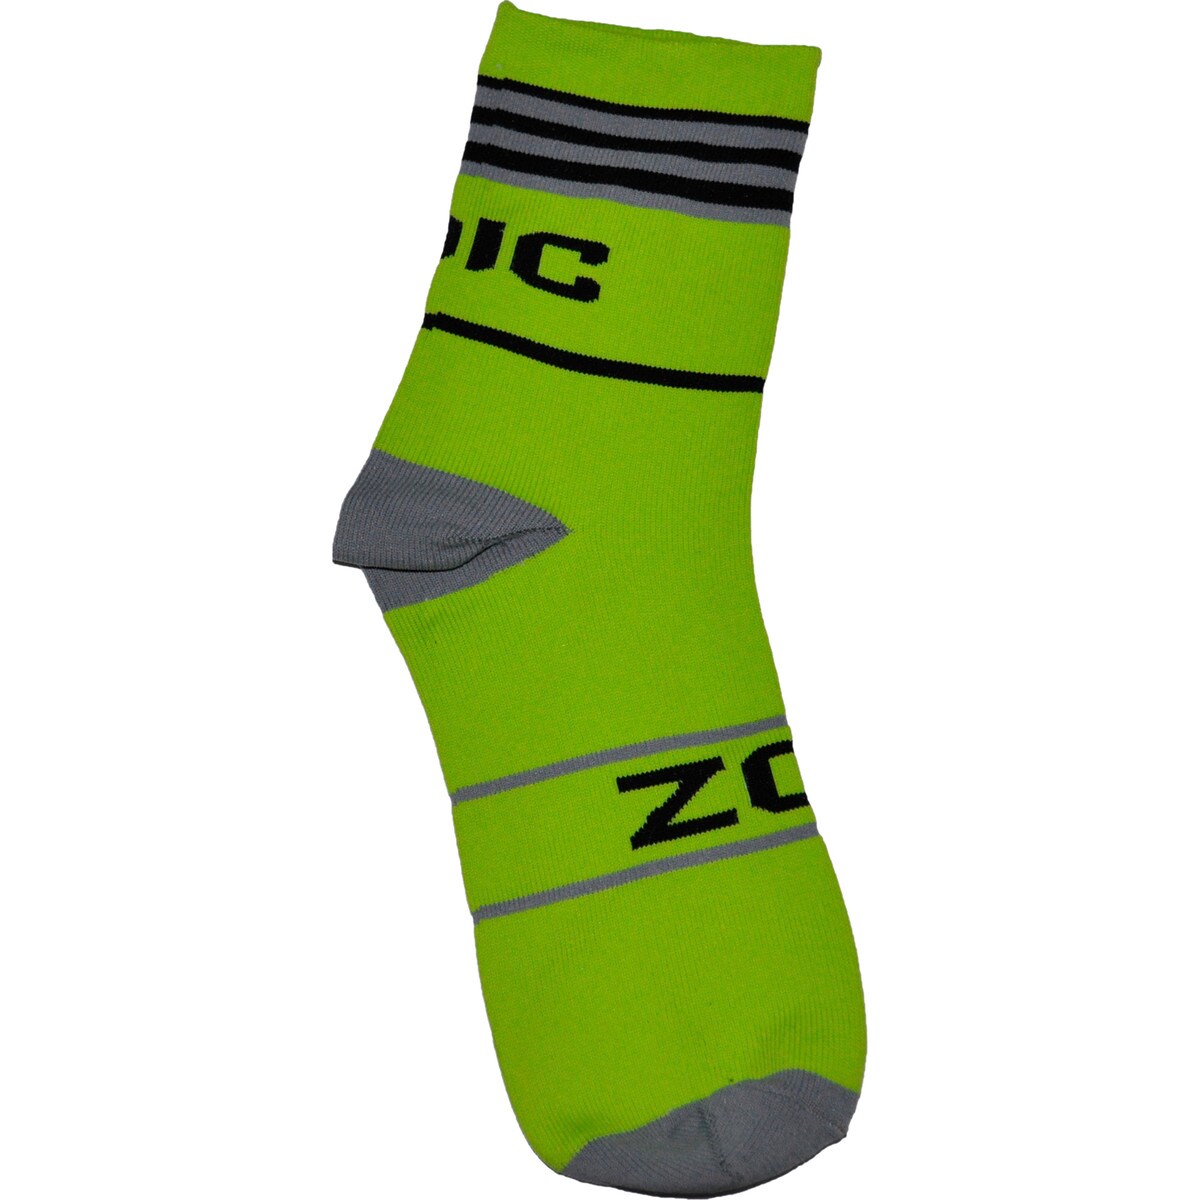 ZOIC Contra Socks Men's